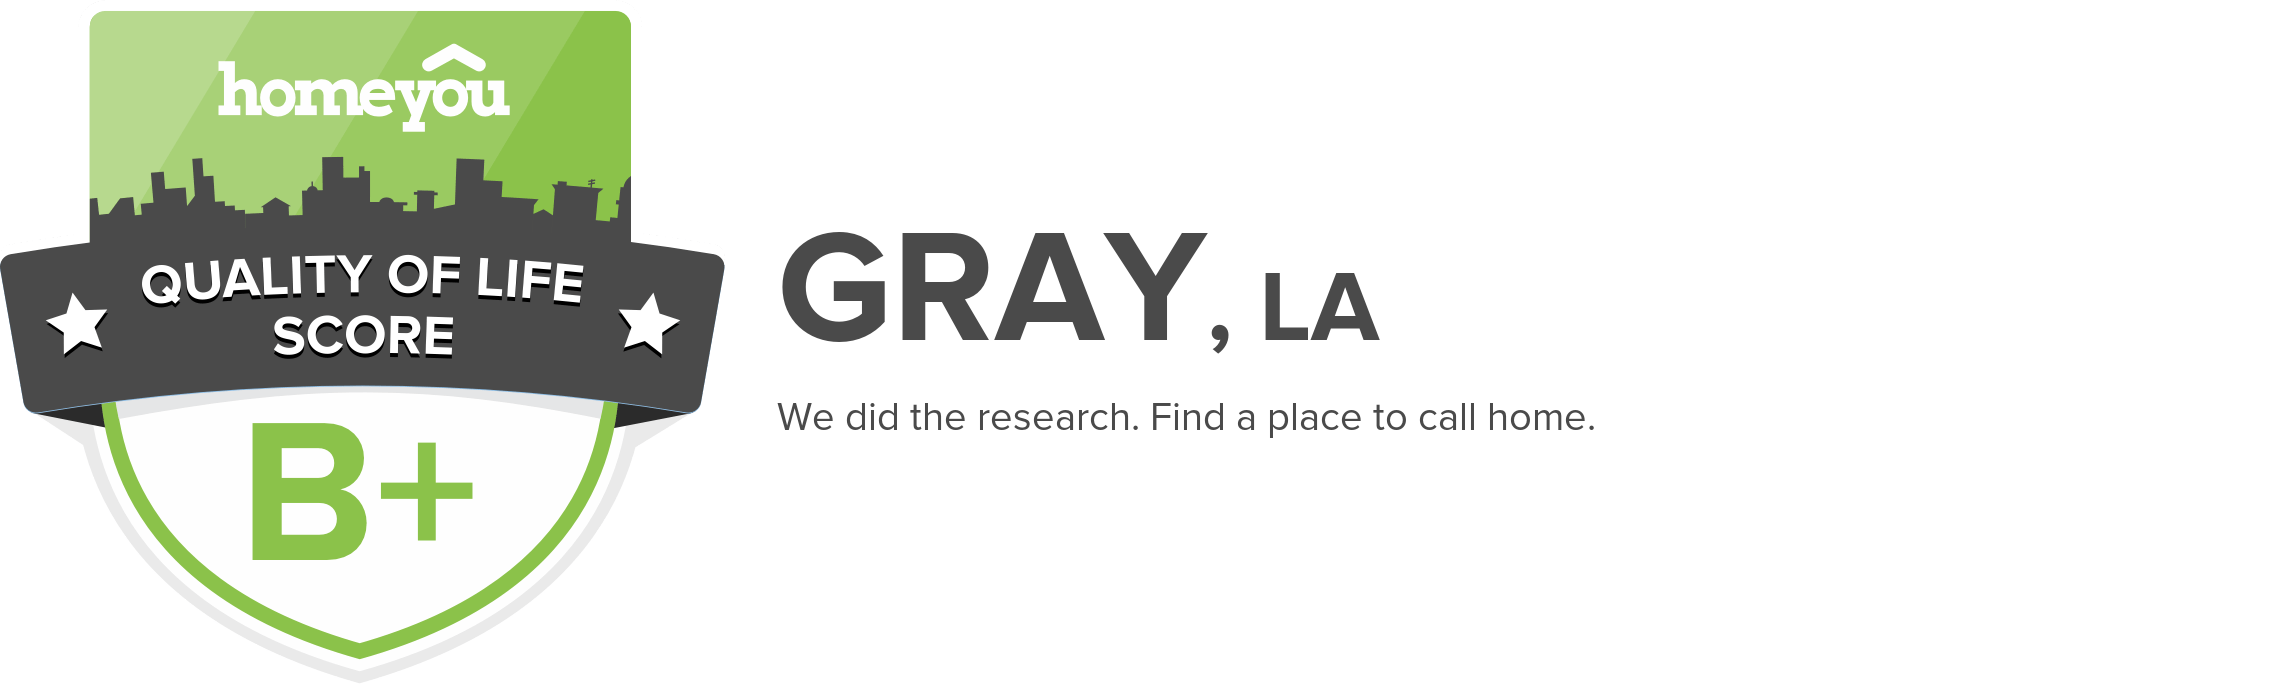 Gray, LA